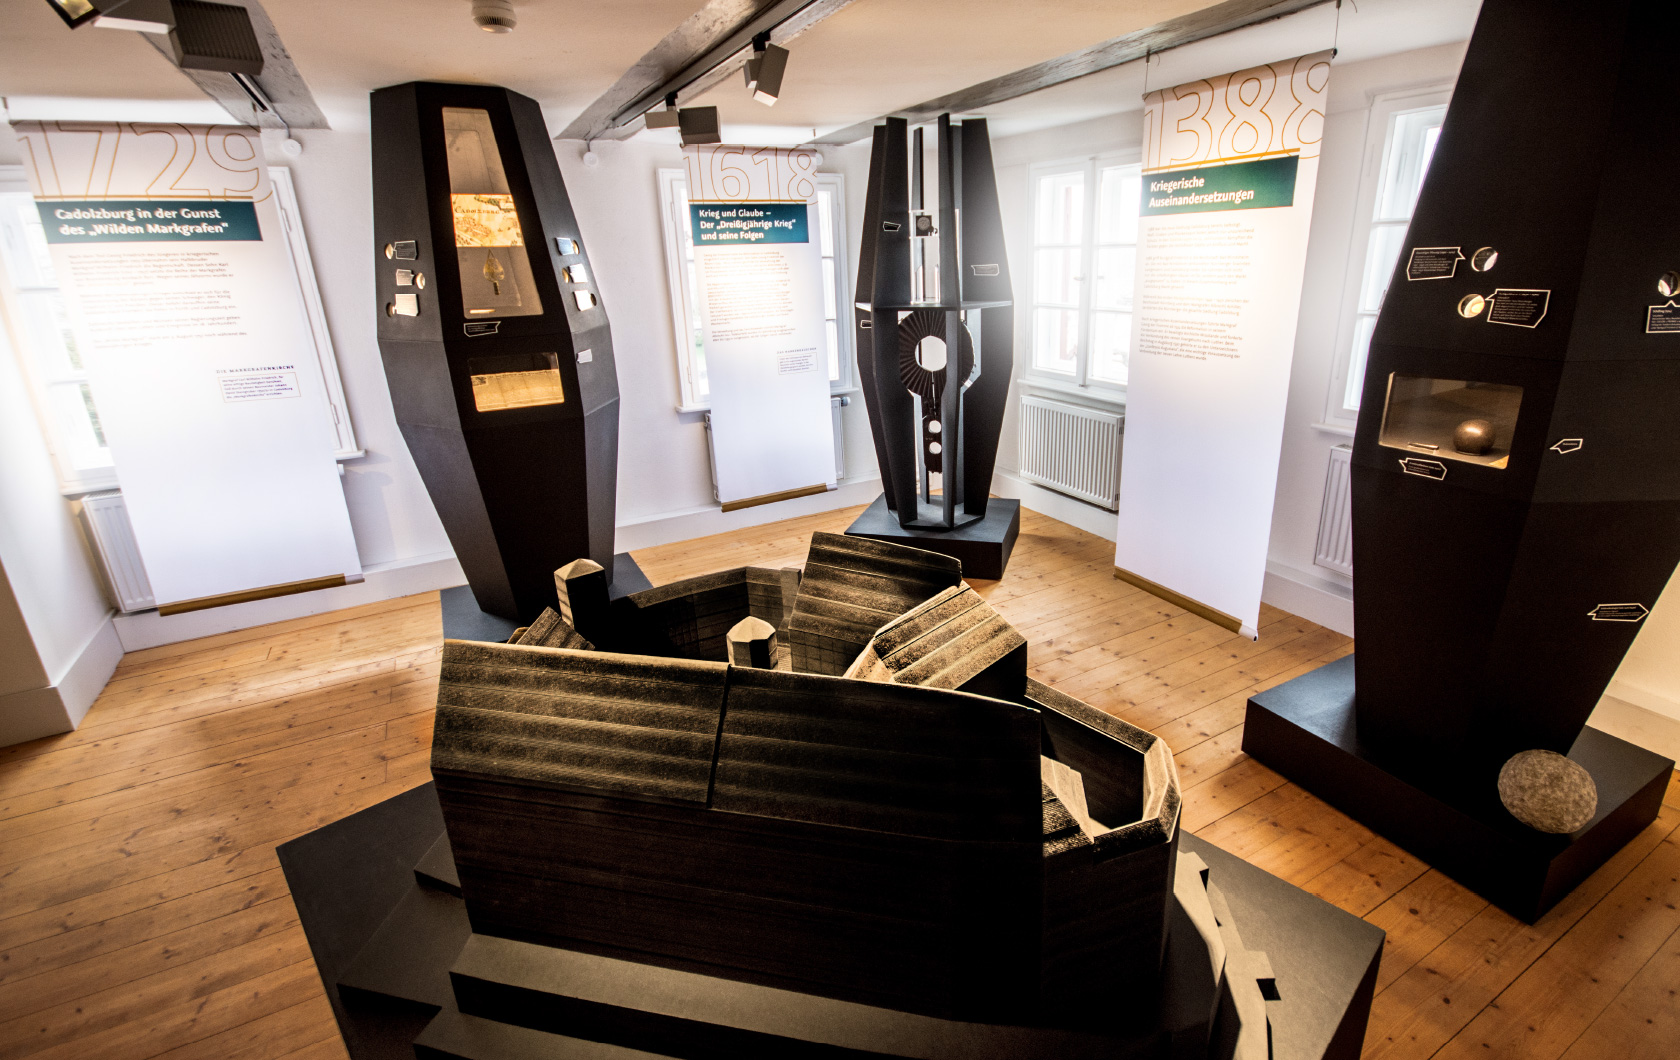 Historisches Museum Cadolzburg Slide-2